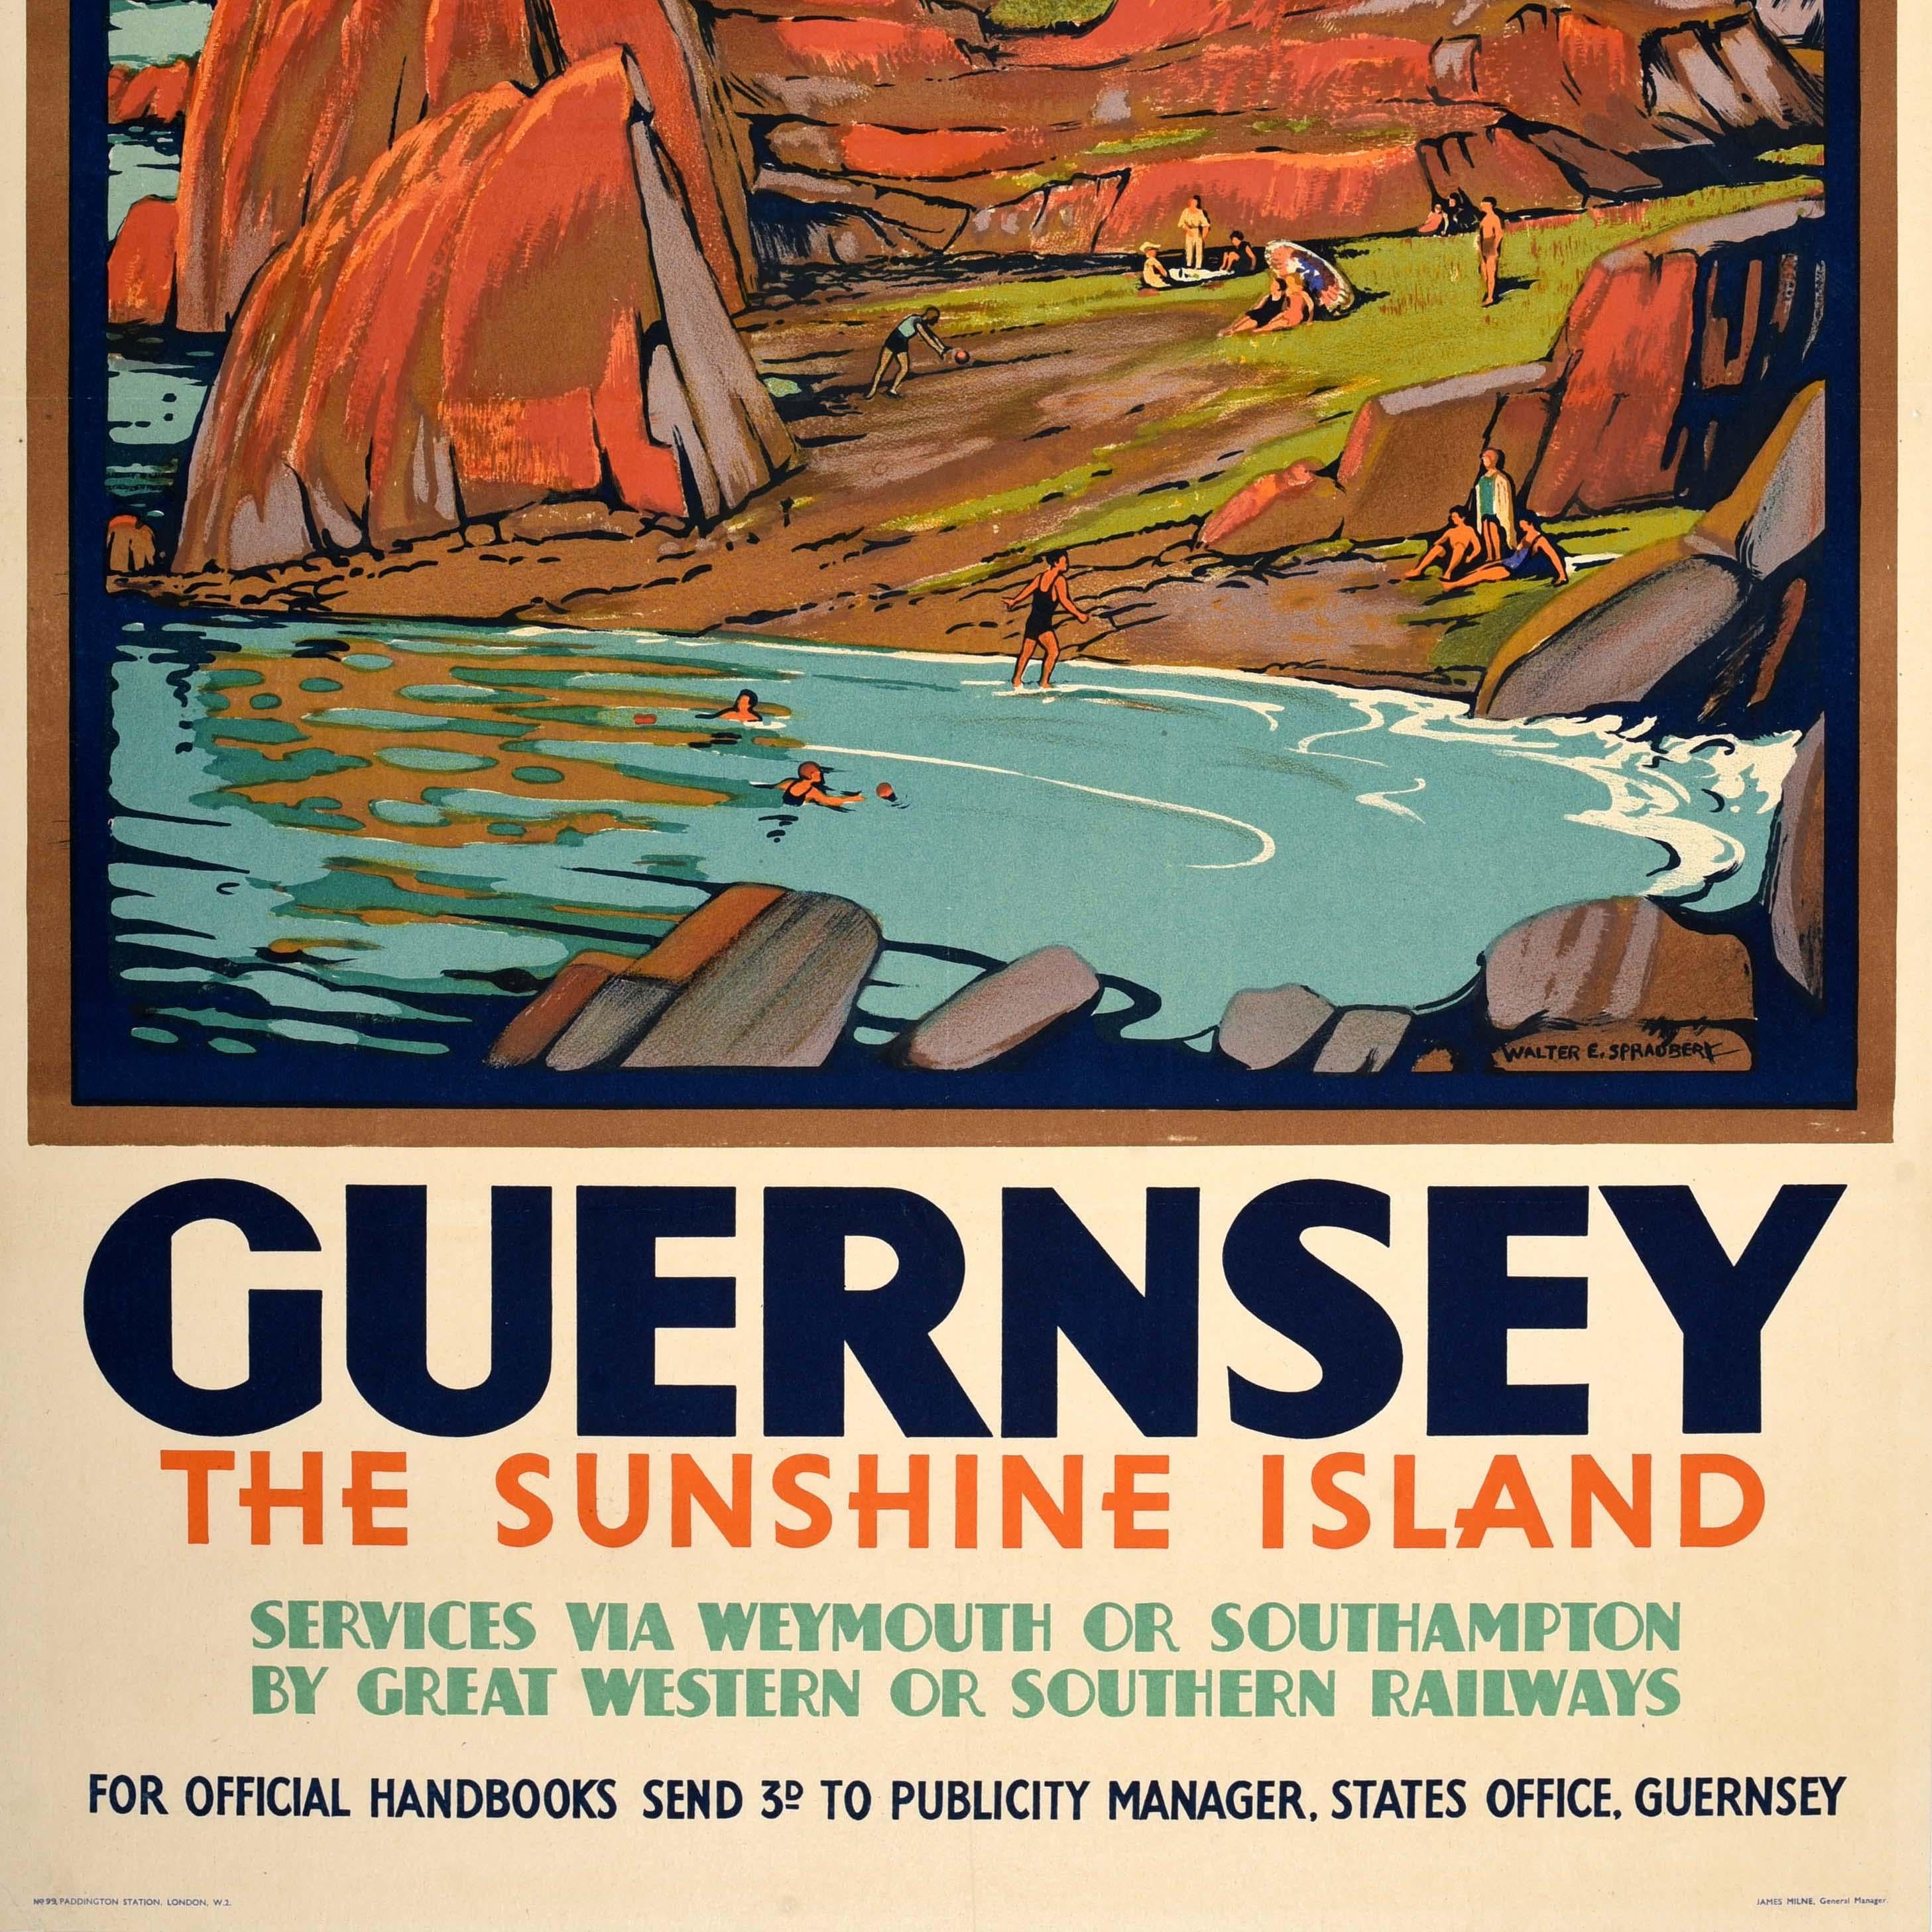 Original Vintage-Zugreiseplakat für die Sonneninsel Guernsey mit farbenfrohem Kunstwerk von Walter E. Spradbery (1889-1969), das Menschen zeigt, die sich einen Tag lang im Gras zwischen Felsen in einer Bucht entspannen und sonnen und im Meer